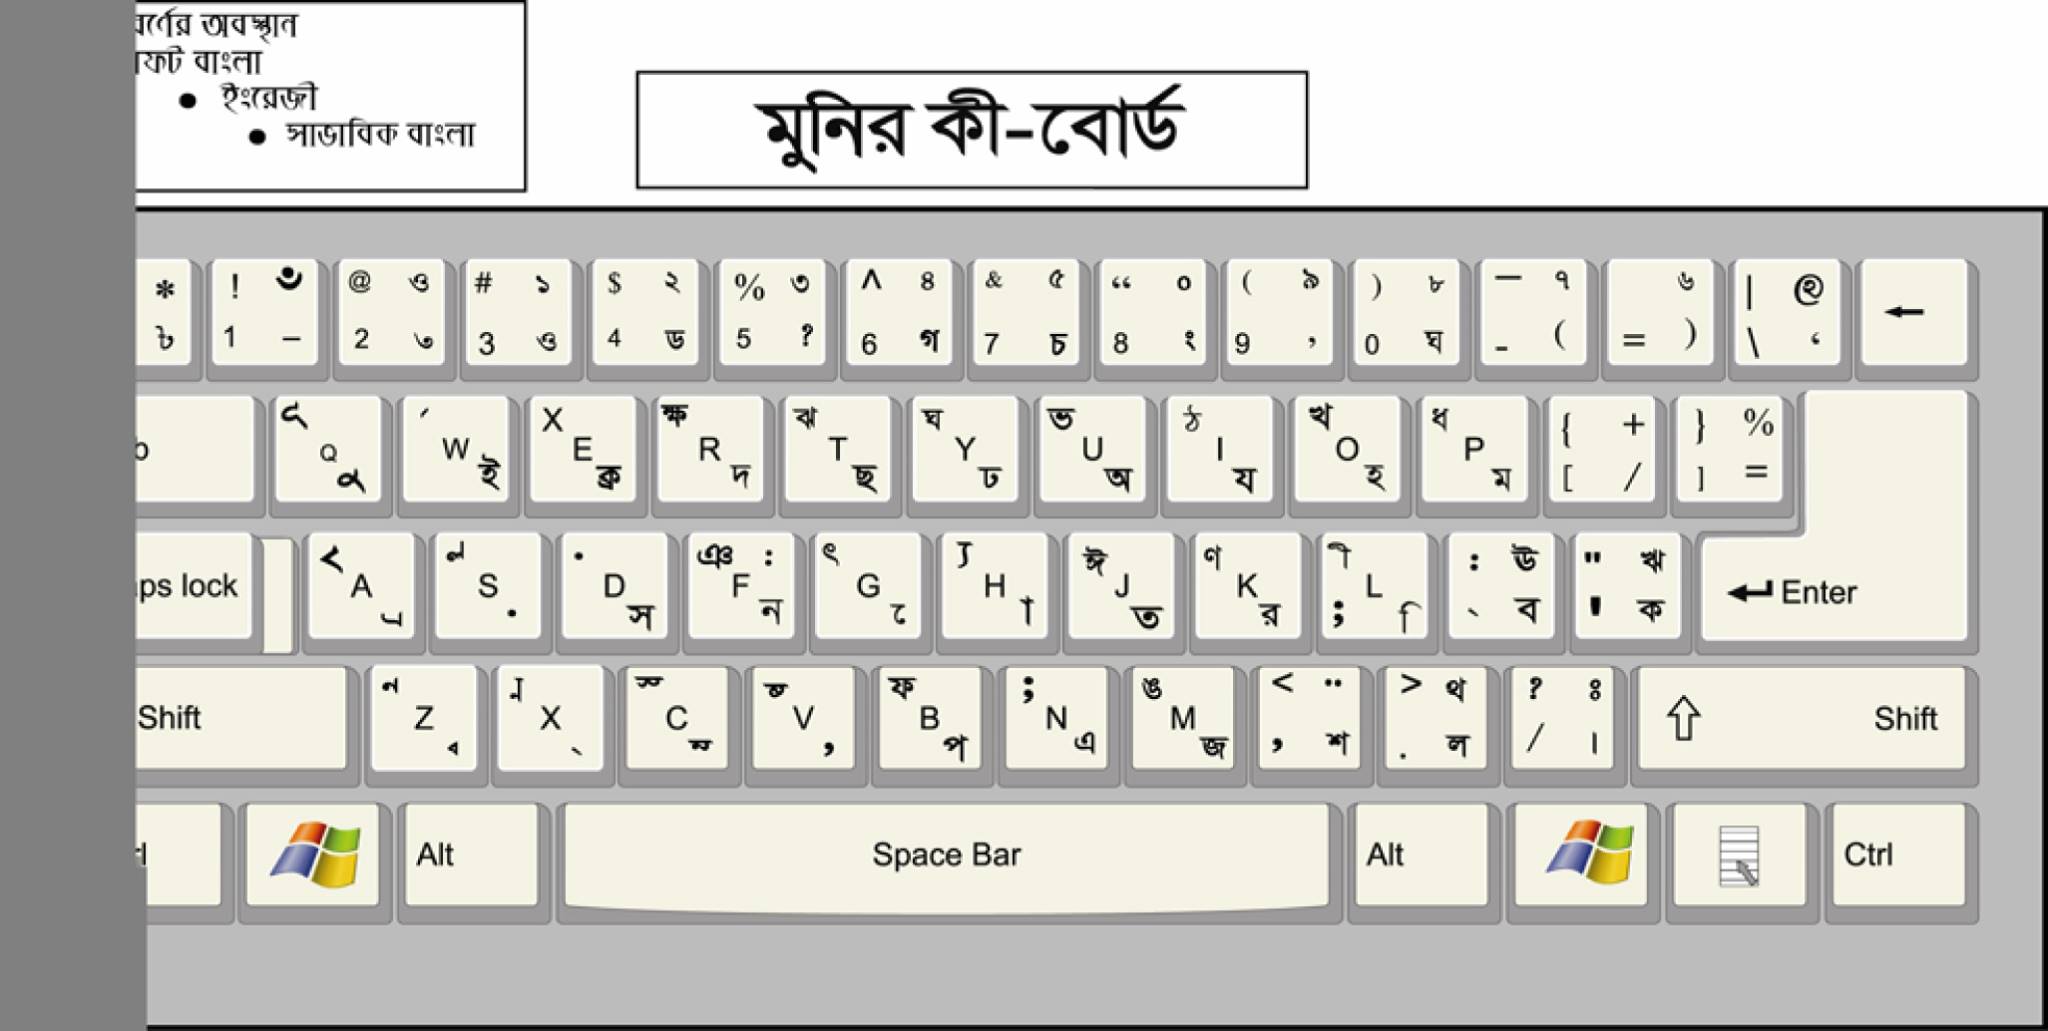 bijoy bangla keyboard layout download